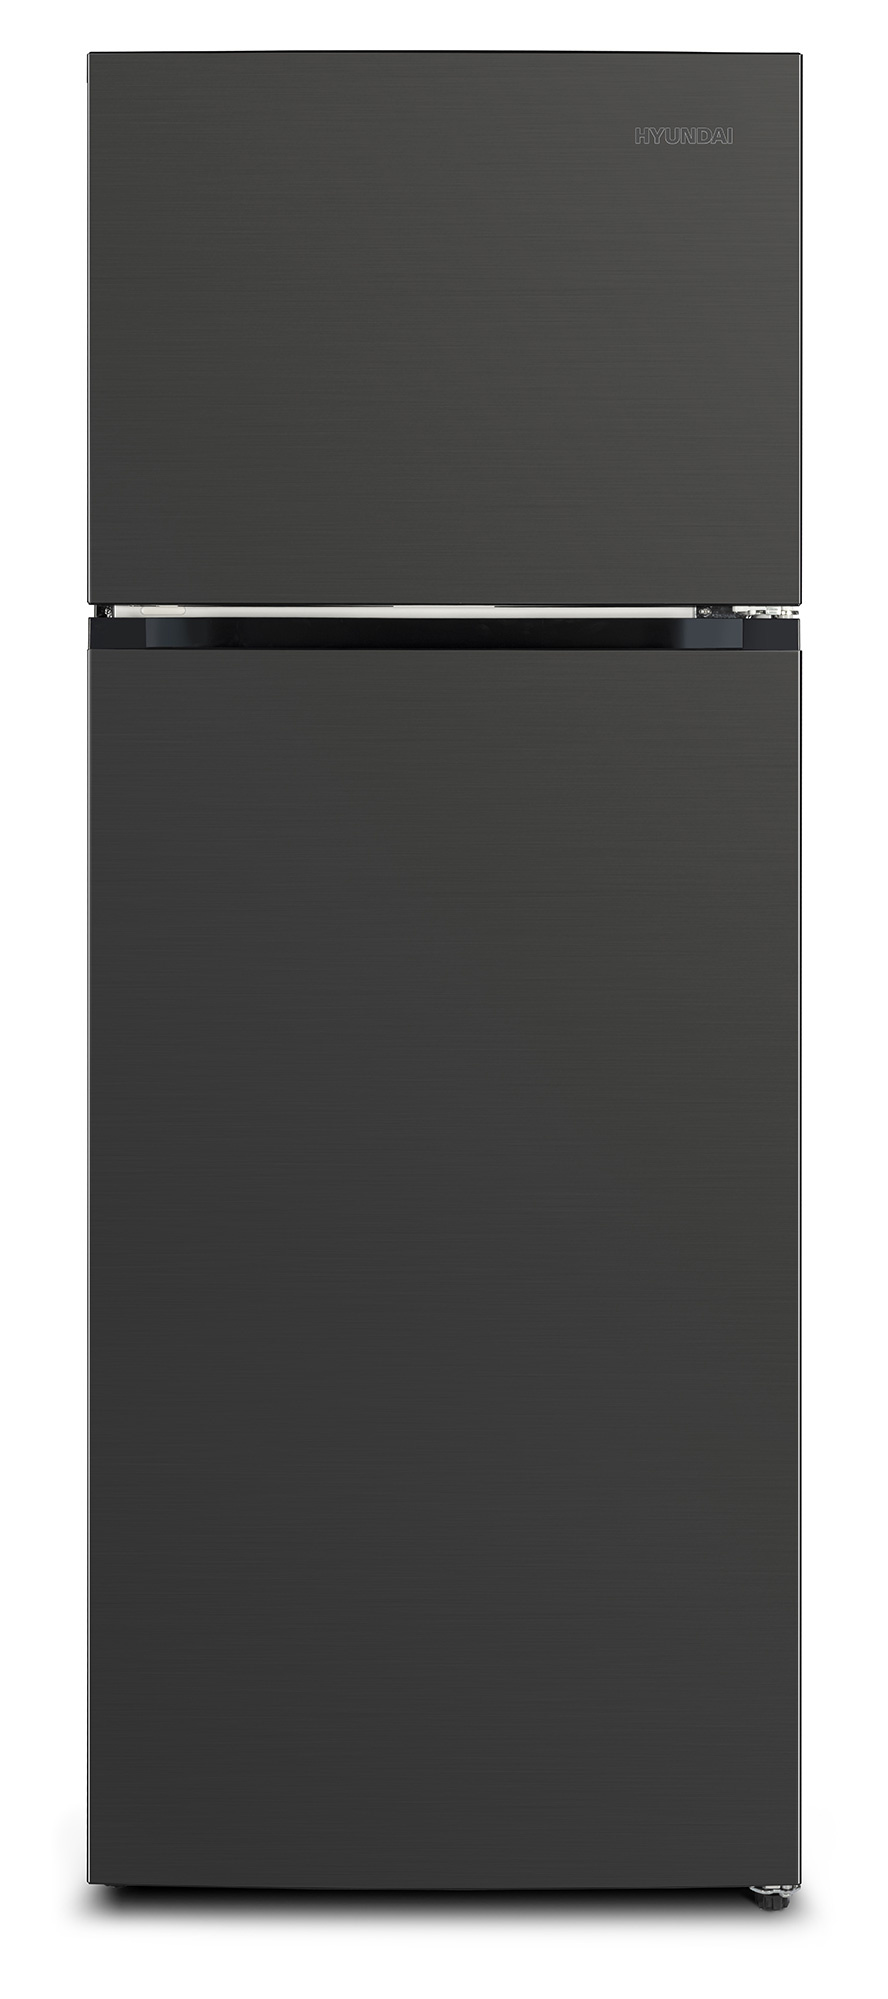 Холодильник Hyundai CT5046FDX, черная сталь